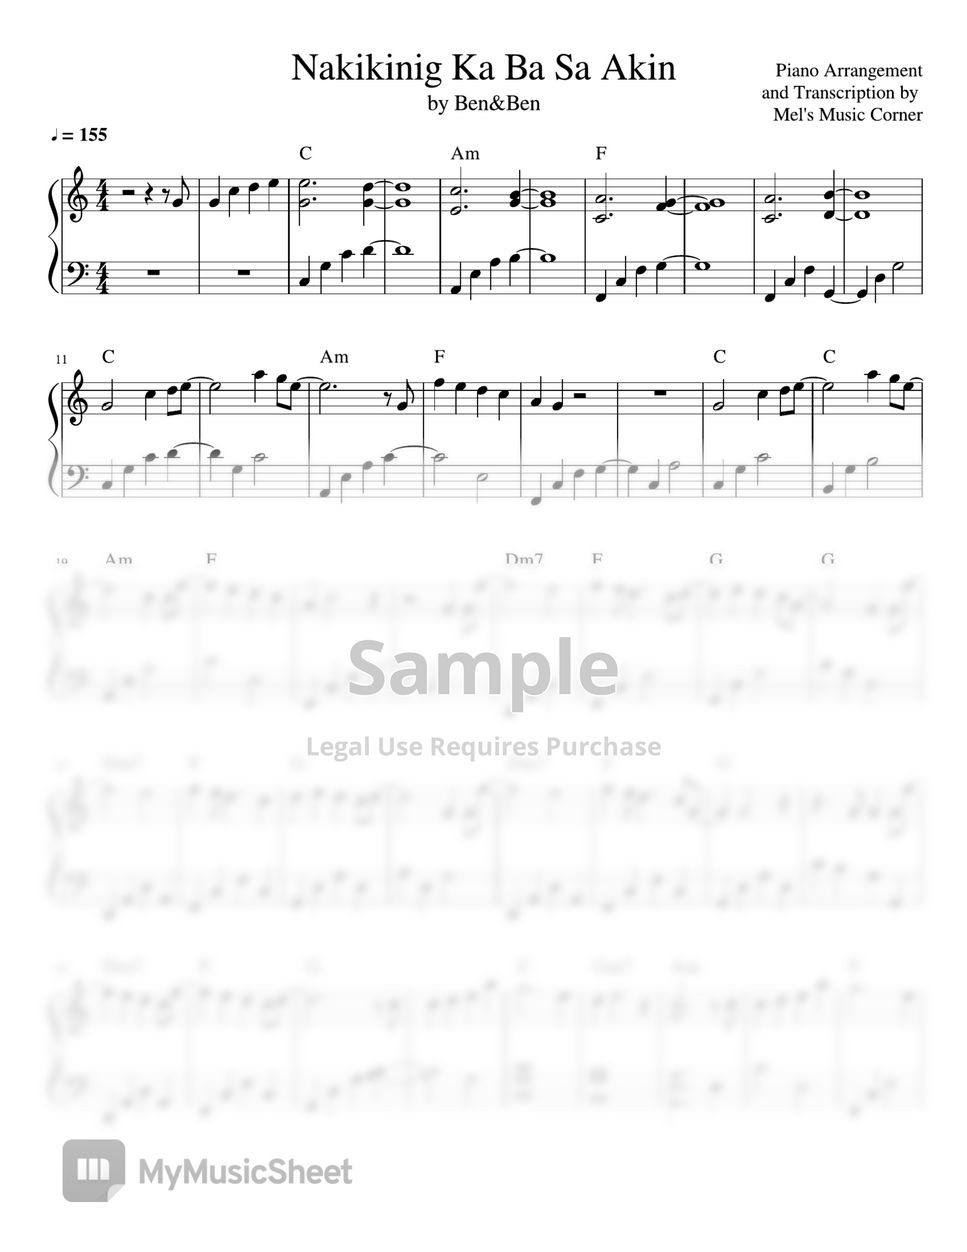 Ben&Ben - Nakikinig Ka Ba Sa Akin (piano sheet music) by Mel's Music Corner